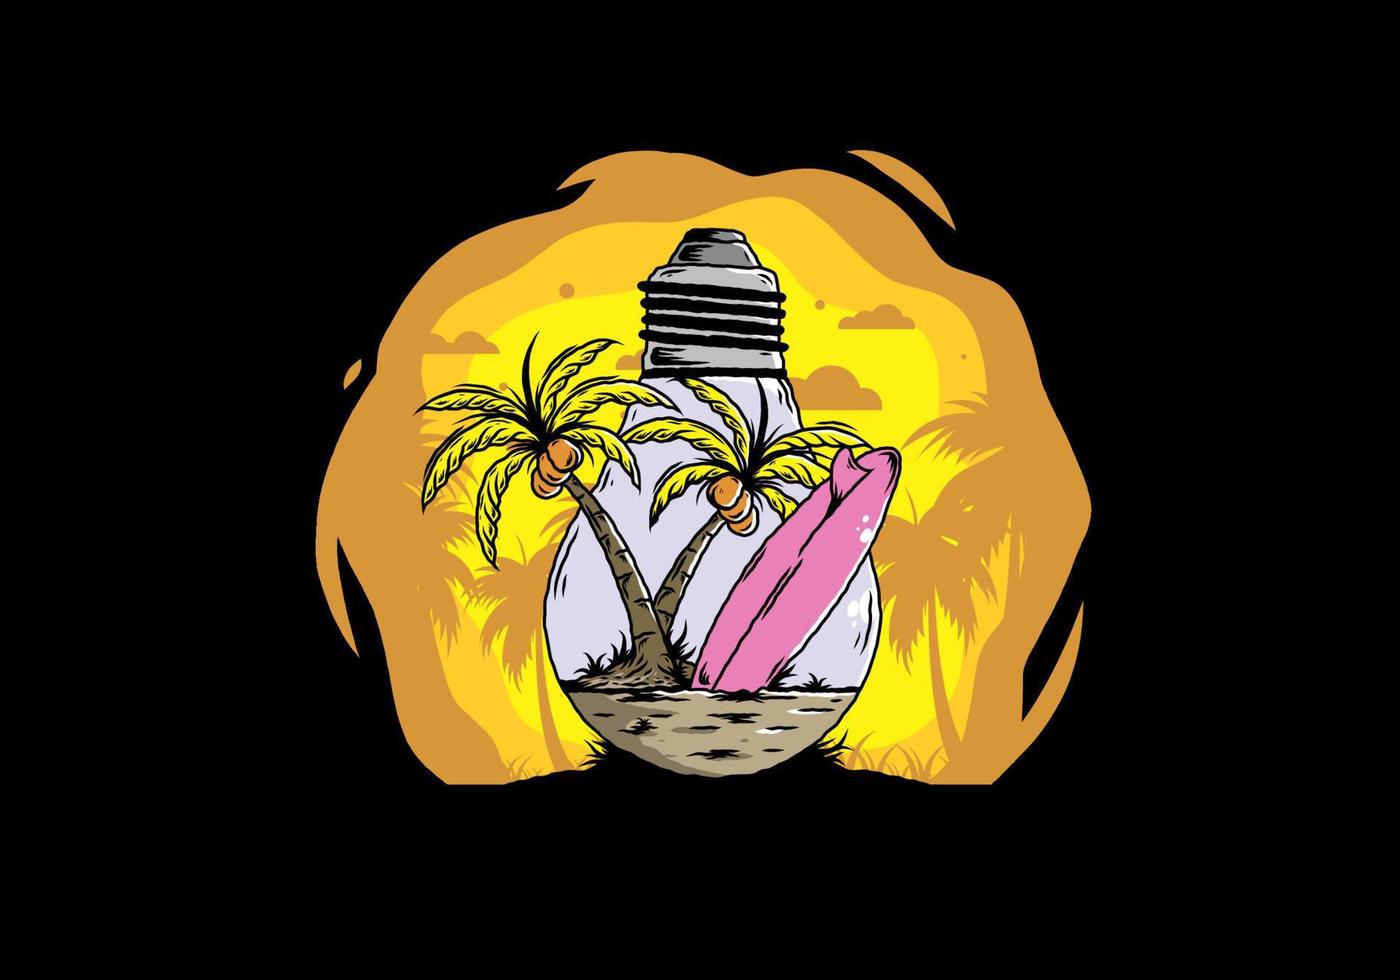 kokospalm och surfbräda i en glödlampa illustration vektor